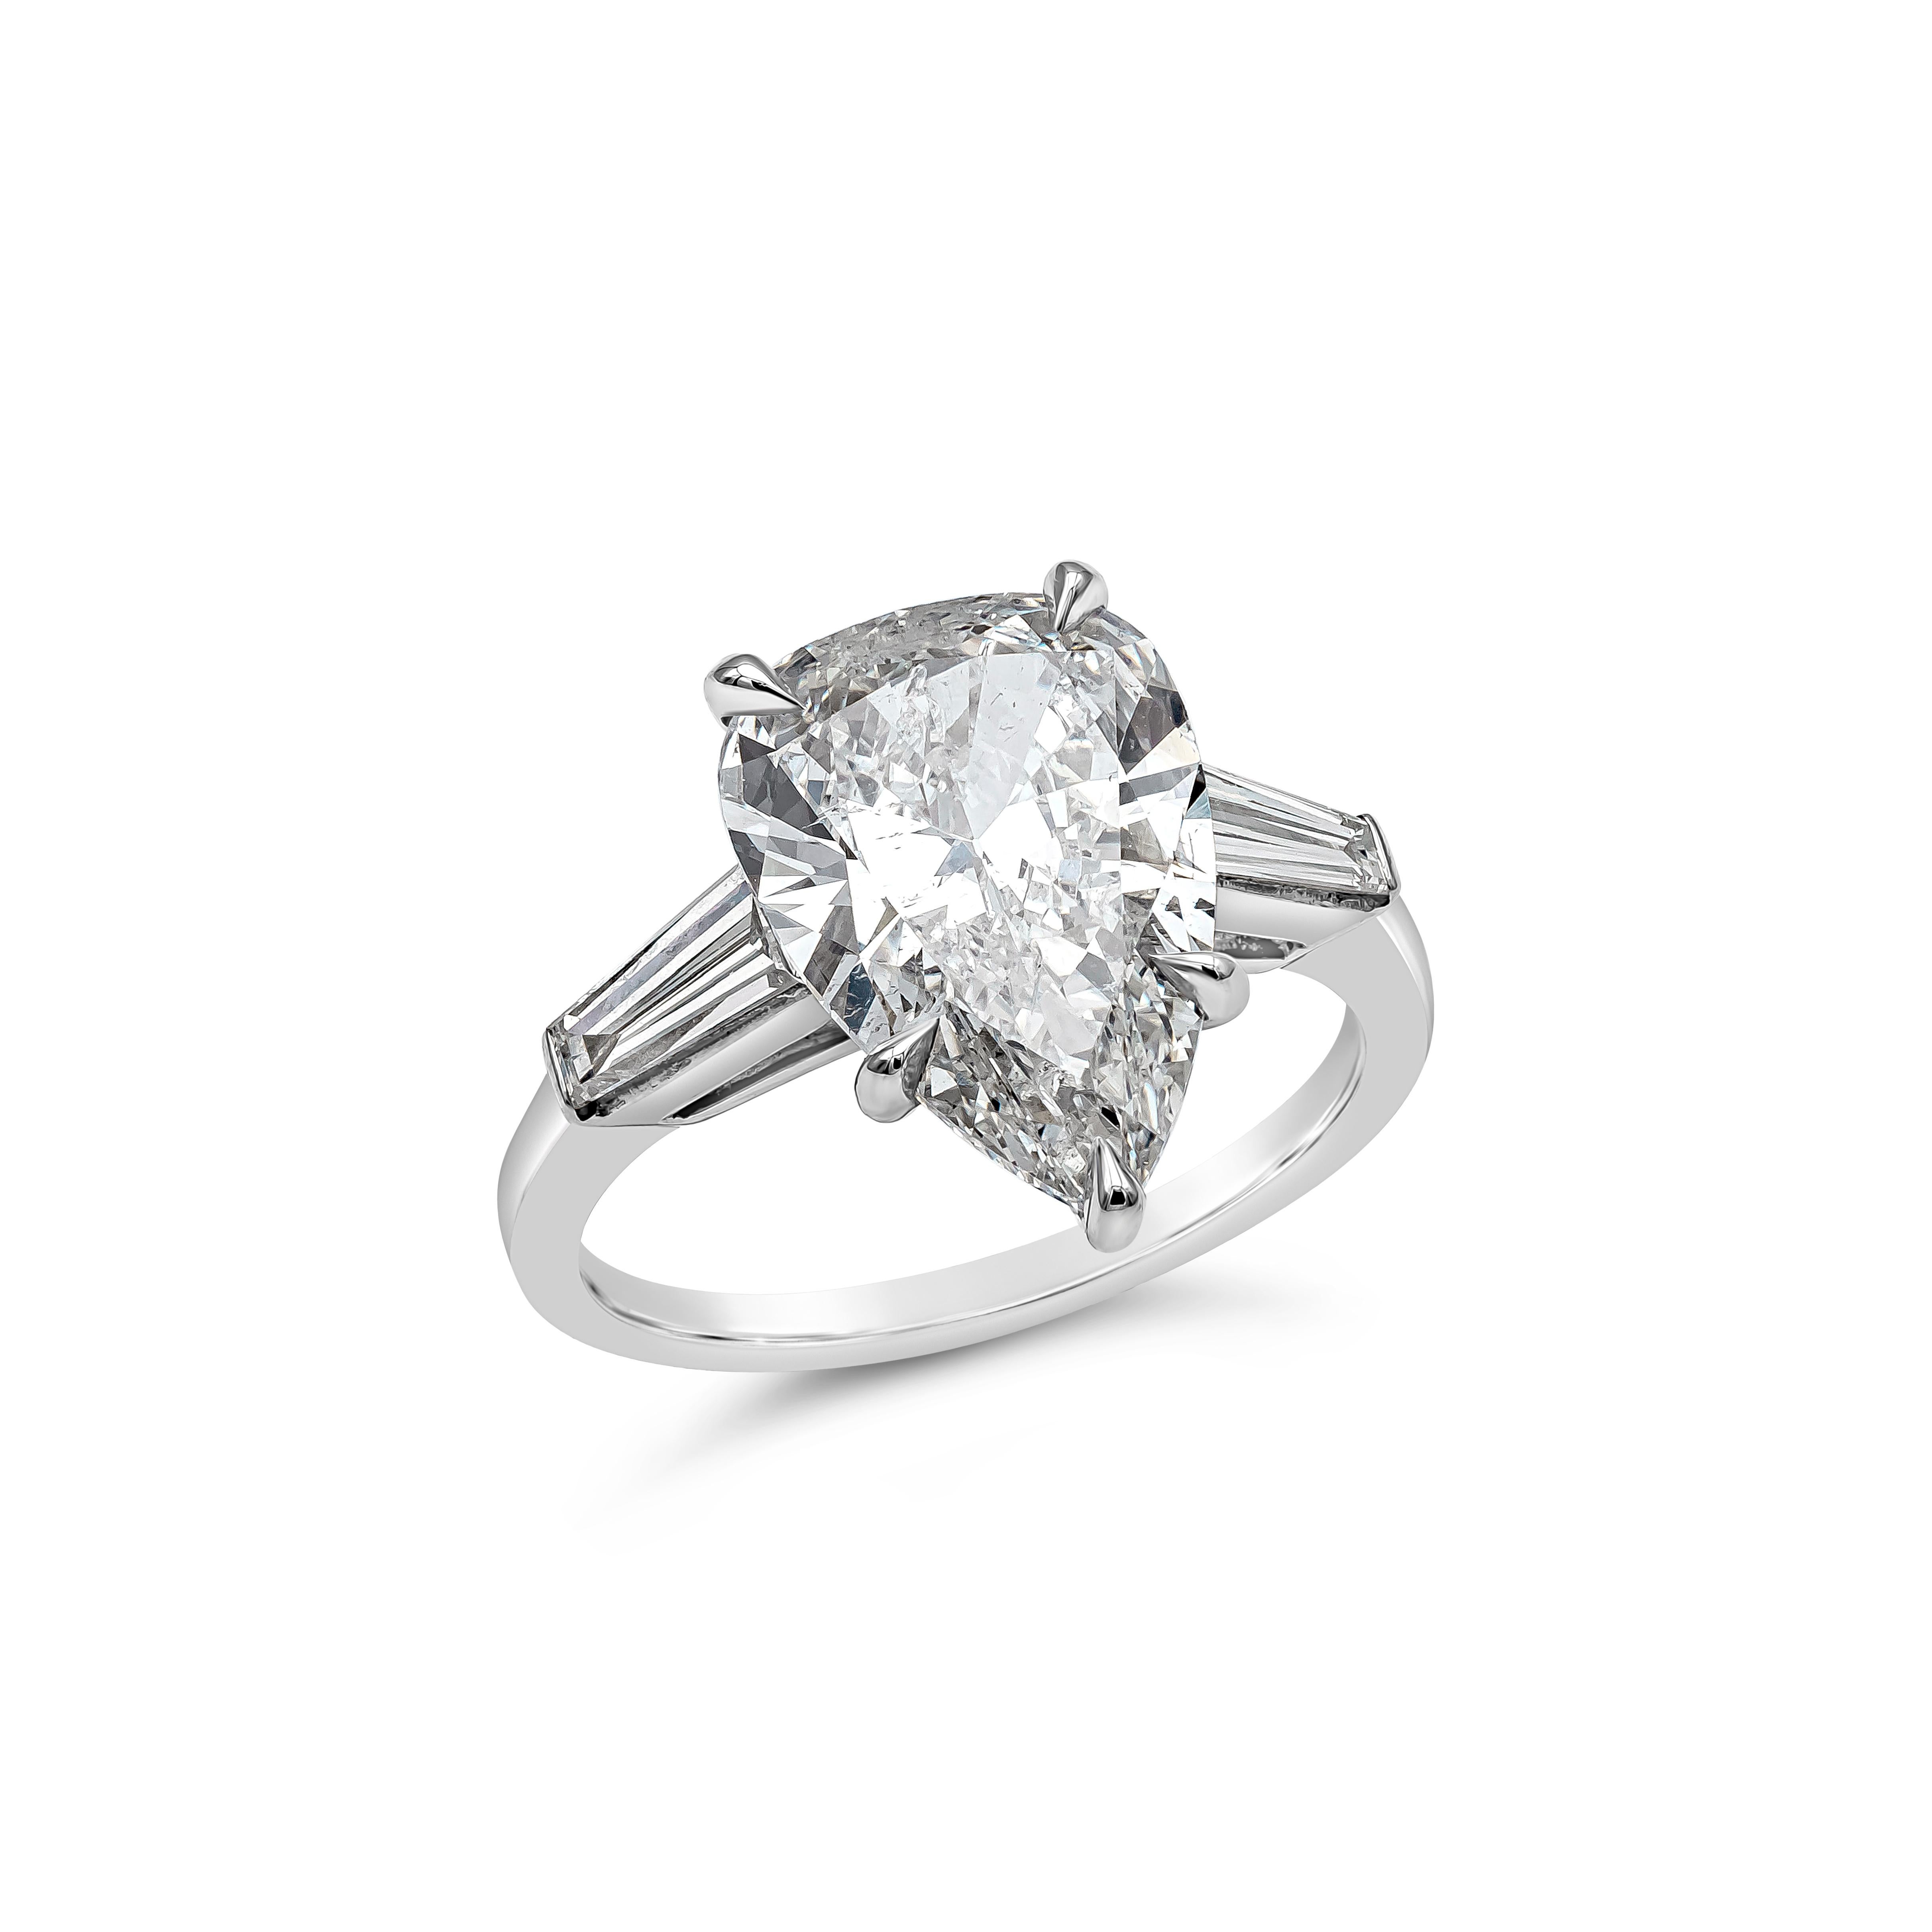  Ein klassischer dreisteiniger Verlobungsring mit einem 4,04 Karat schweren, birnenförmigen Diamanten, der vom GIA mit der Farbe I und der Reinheit SI2 zertifiziert wurde, flankiert von Baguette-Diamanten auf beiden Seiten. Die Akzentdiamanten